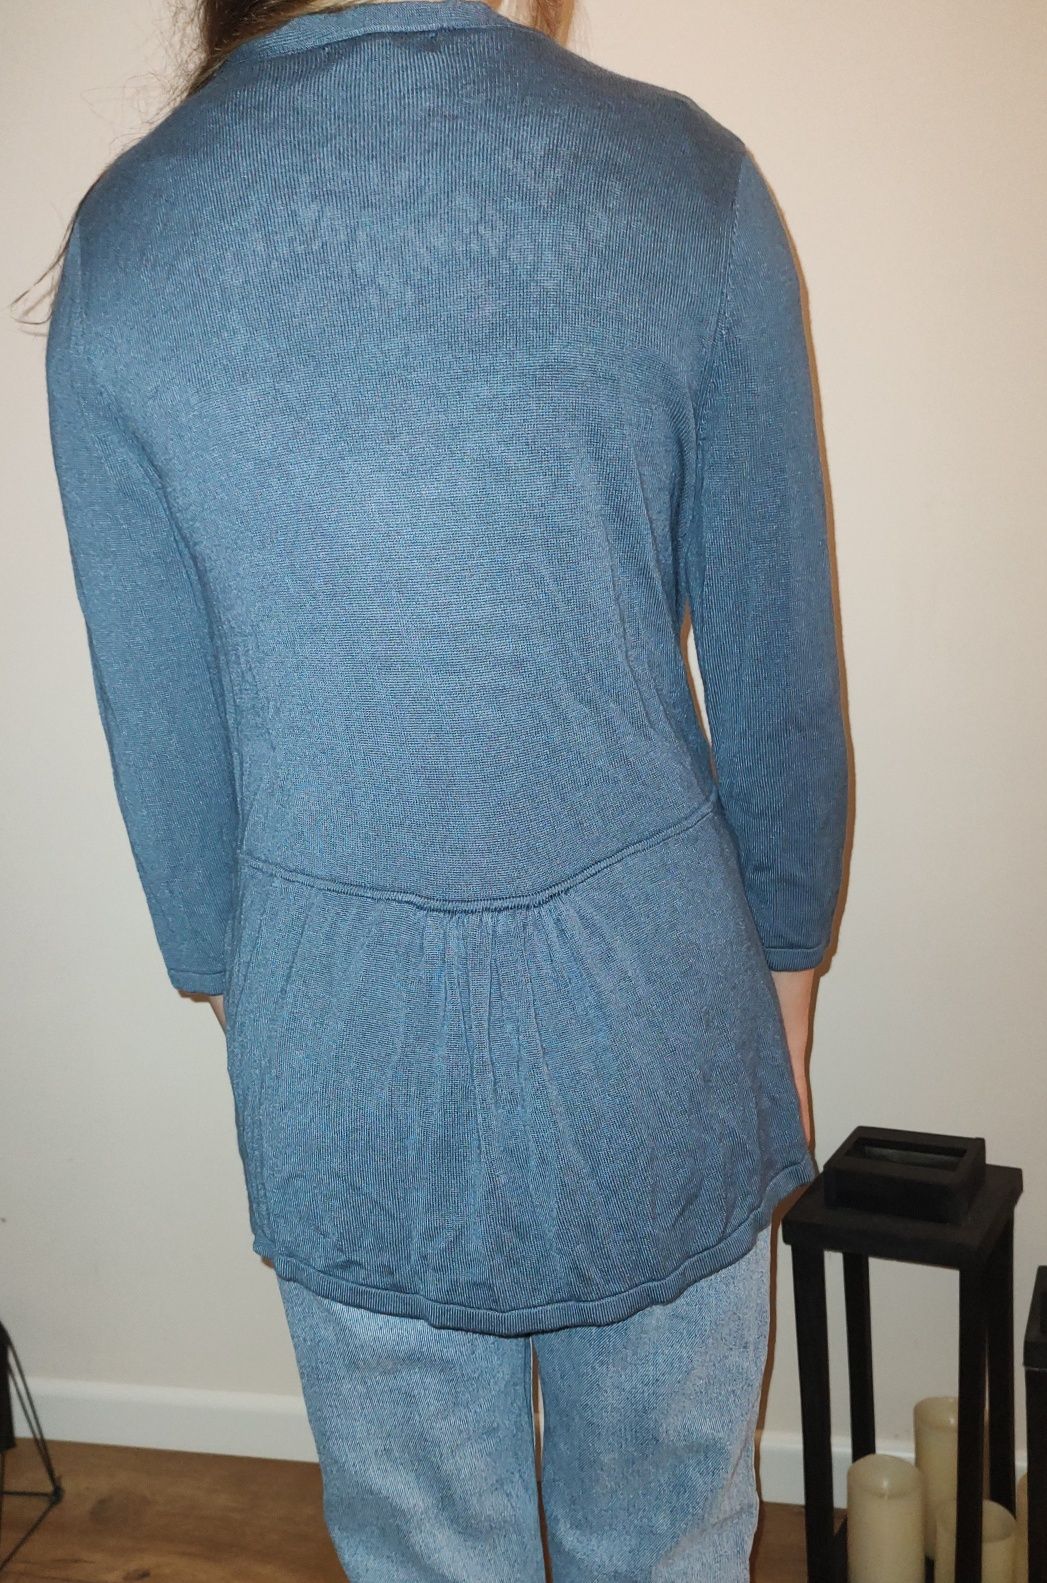 nowy sweter narzutka kardigan niezapinany niebieski 34/36 XS/S